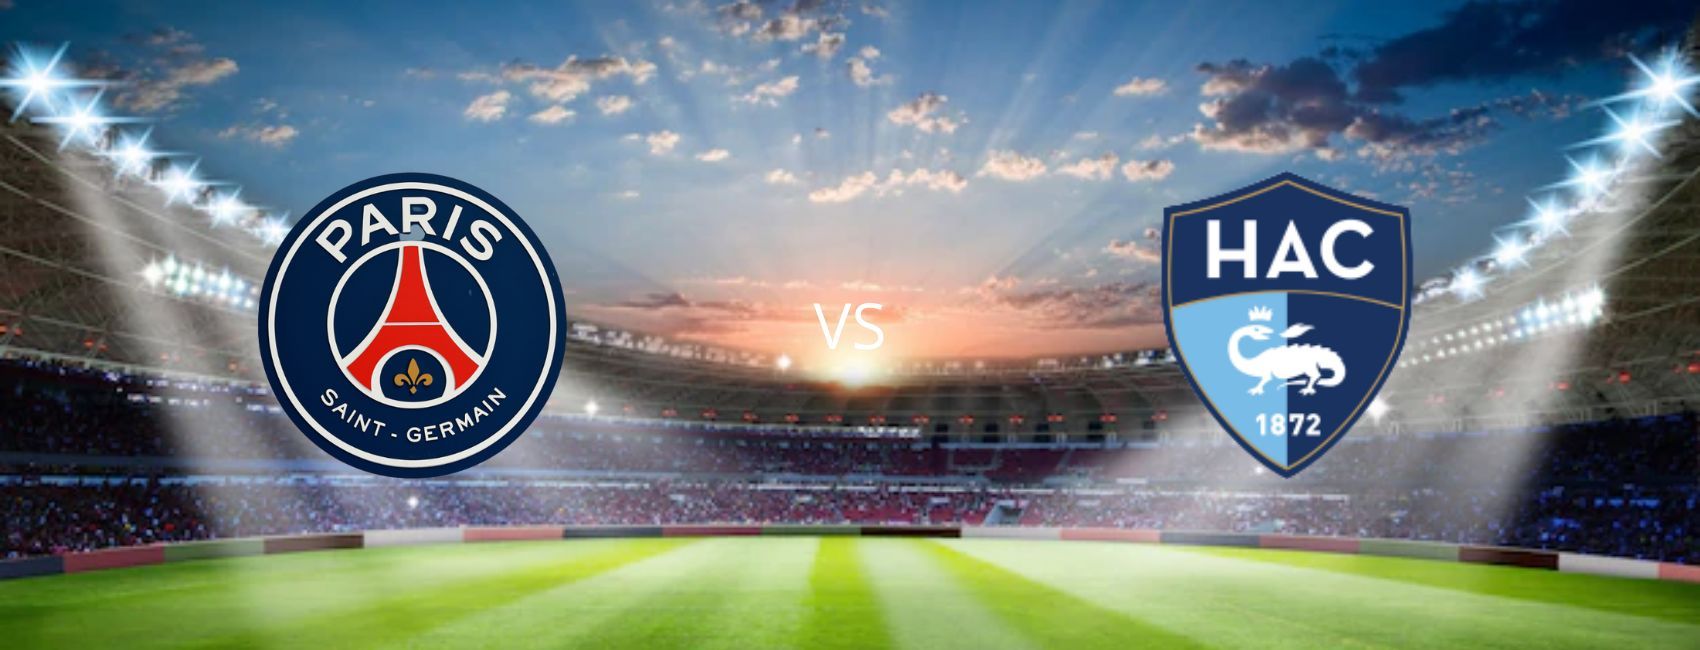 Paris Saint-Germain FC vs Le Havre AC French Ligue 1 Tickets on sale now |  Ticombo